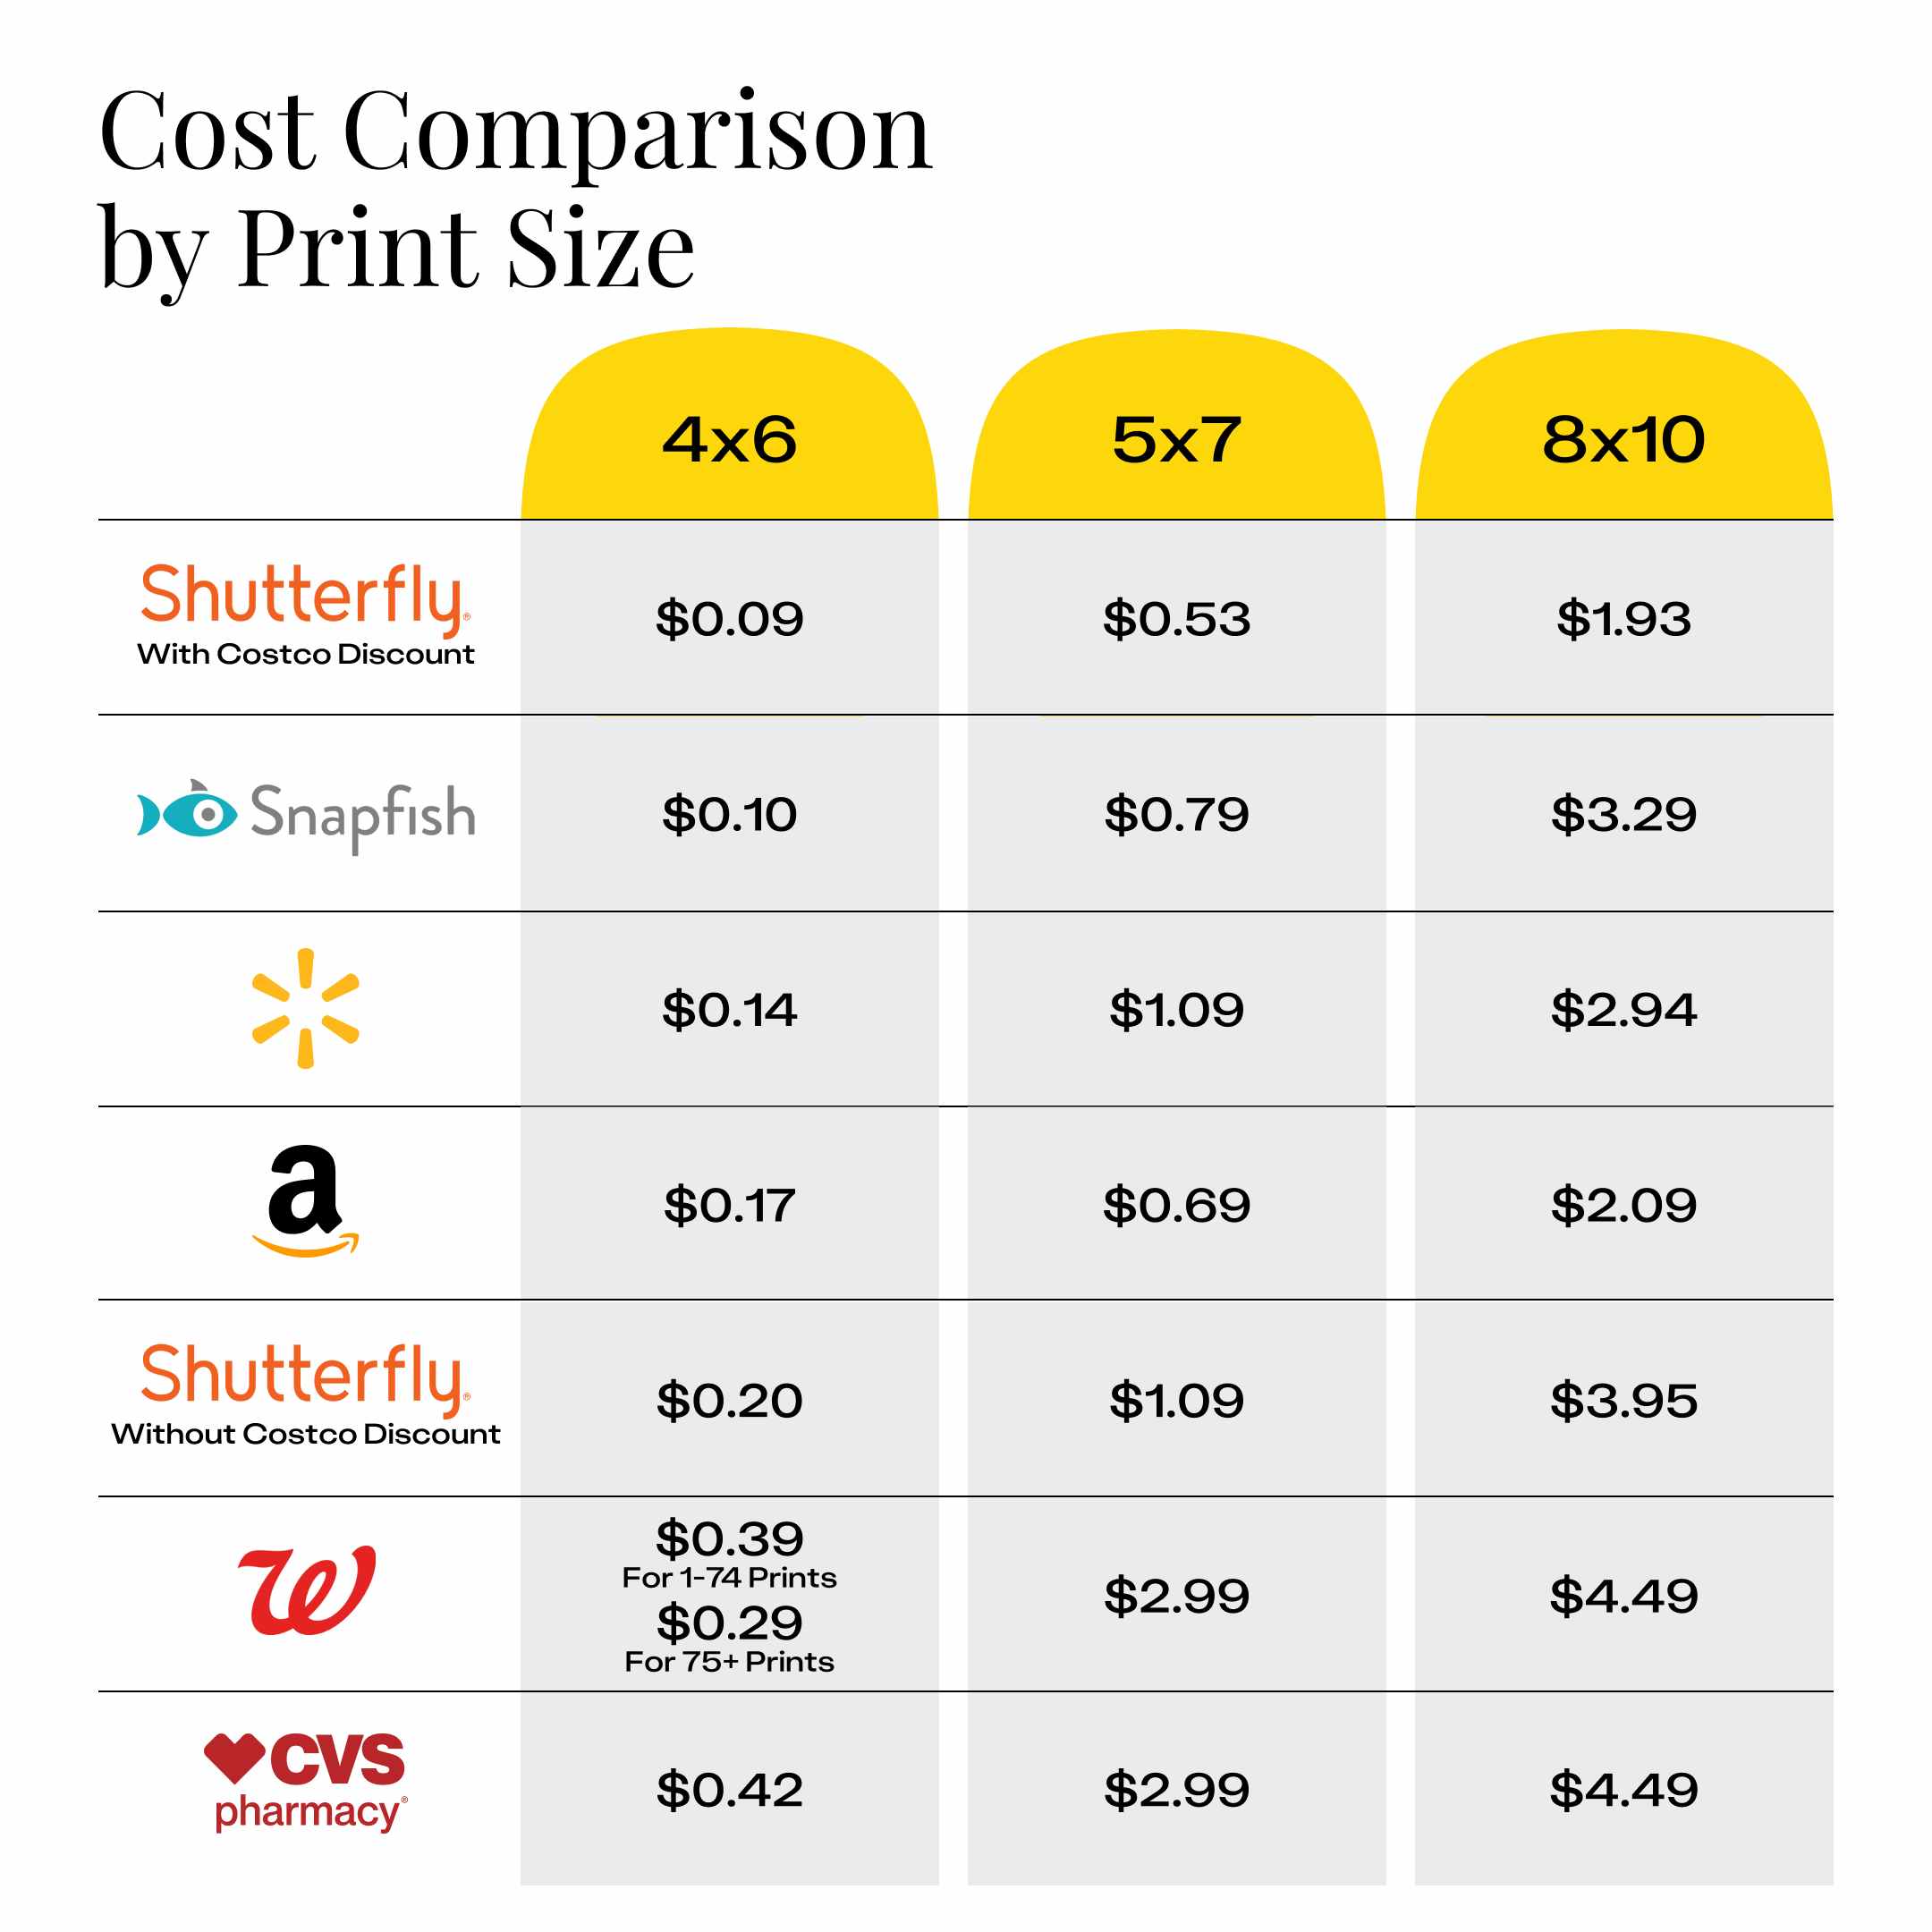 costco-cost-comparison-by-print-size